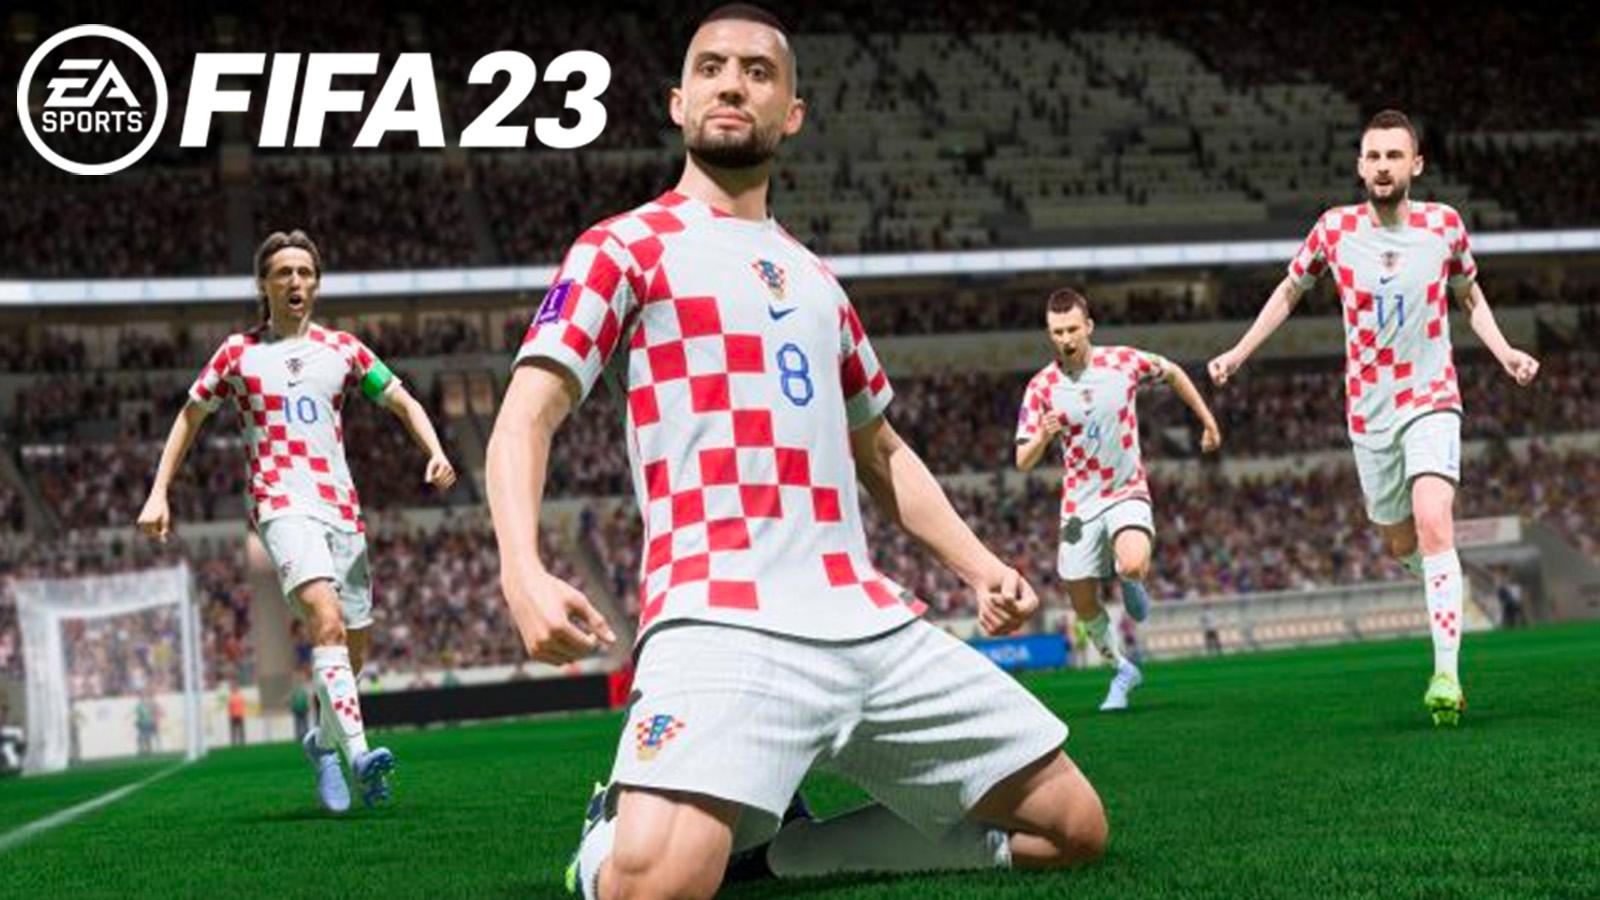 Croatia players in FIFA 23